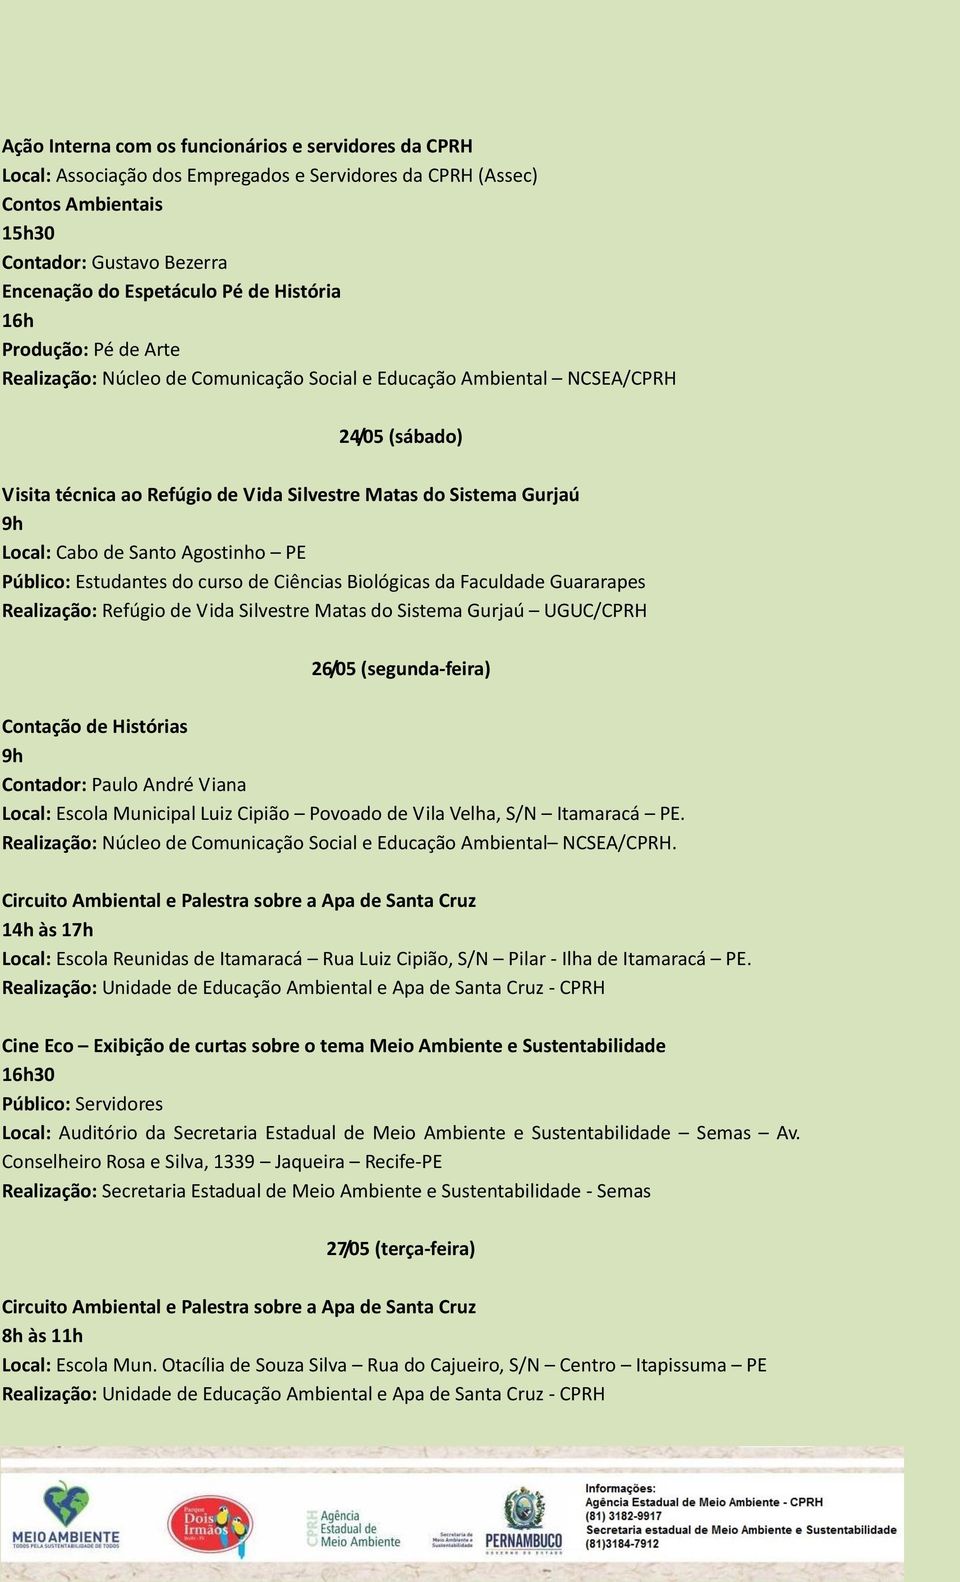 Cabo de Santo Agostinho PE Público: Estudantes do curso de Ciências Biológicas da Faculdade Guararapes Realização: Refúgio de Vida Silvestre Matas do Sistema Gurjaú UGUC/CPRH 26/05 (segunda-feira) 9h